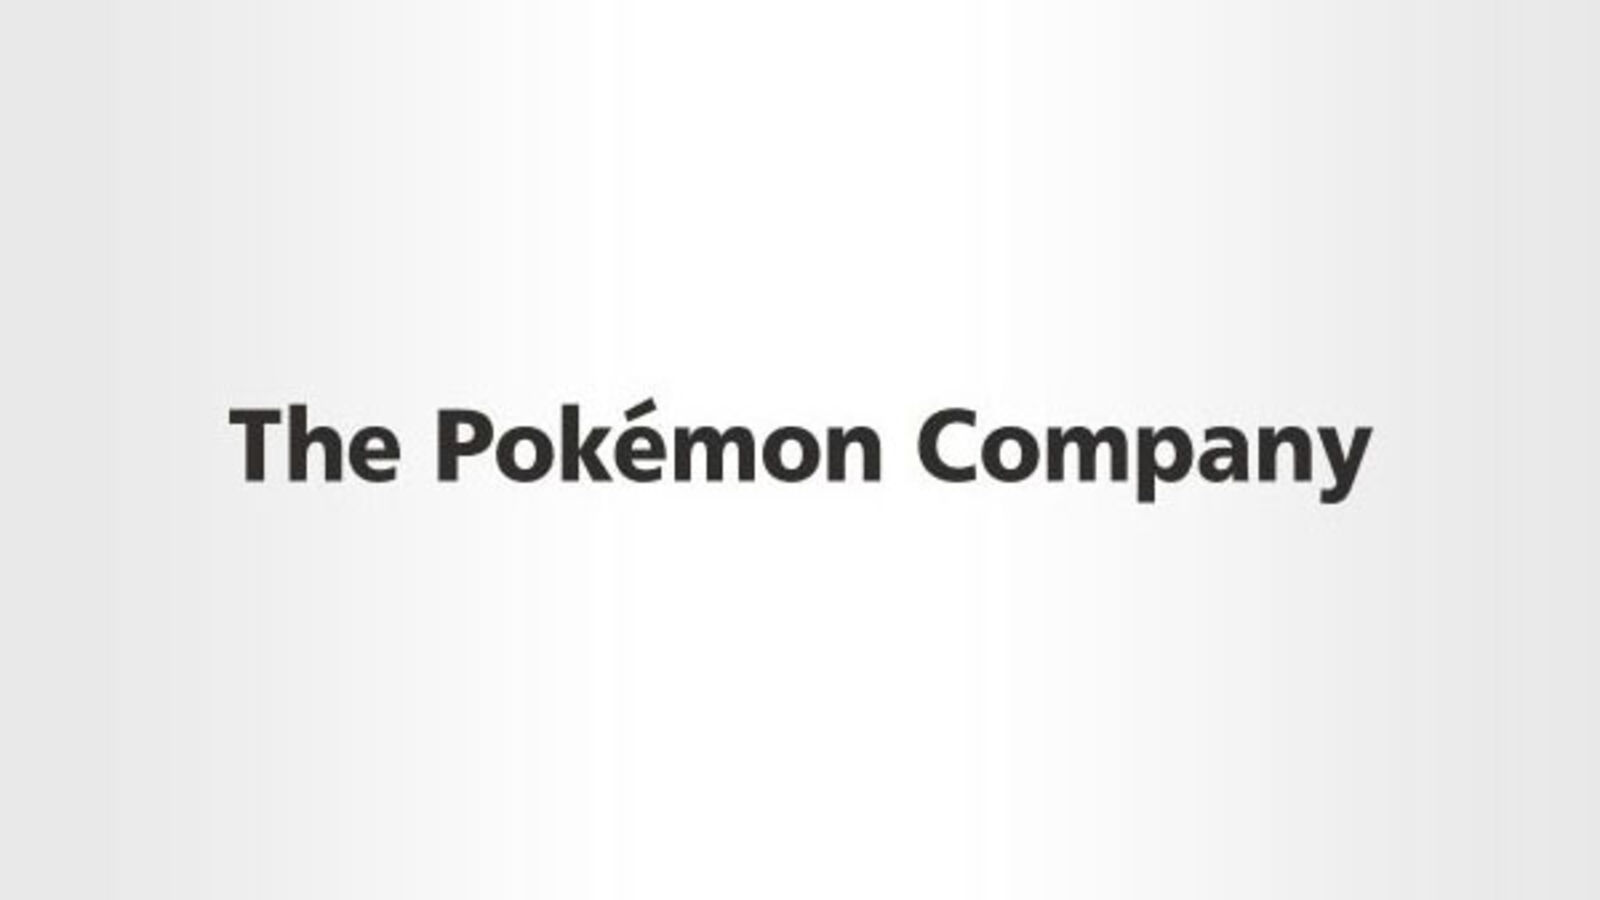 Fake Pokémon NFT project taken to court by The Pokémon Company